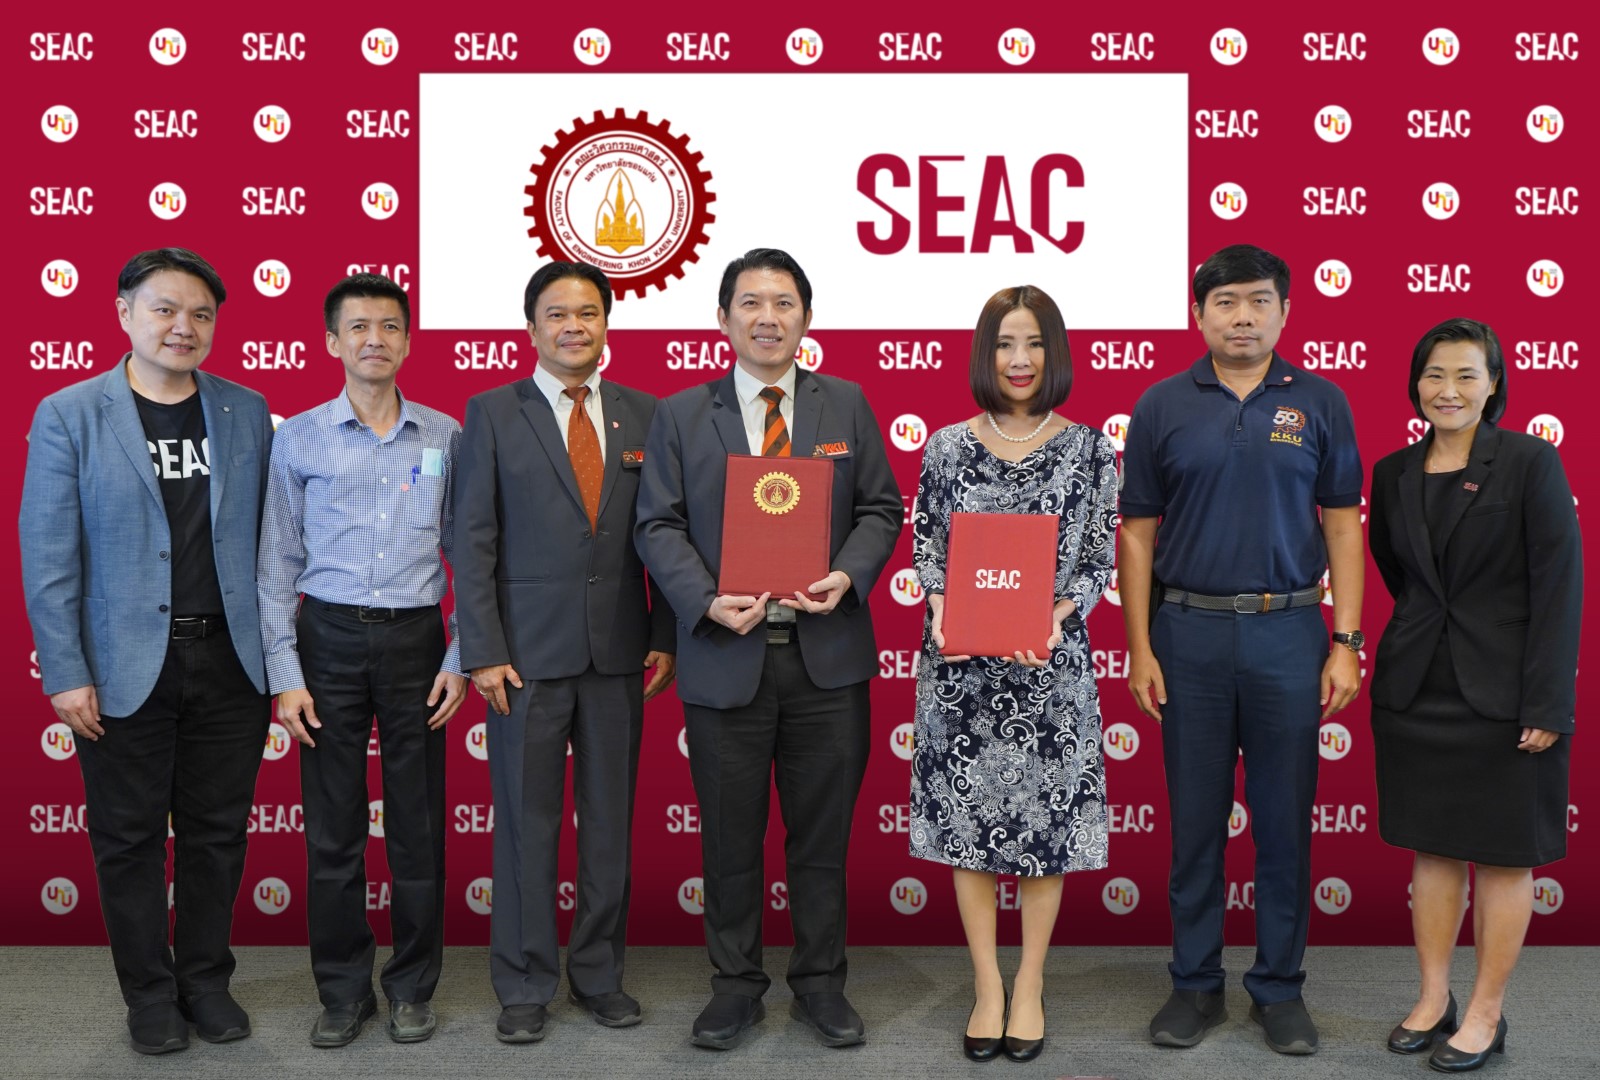 SEAC ร่วมกับ คณะวิศวกรรมศาสตร์ มหาวิทยาลัยขอนแก่น ปั้นหลักสูตรอัพเกรดทักษะ (ว่าที่) และวิศวกรไทยสู่ระดับสากล